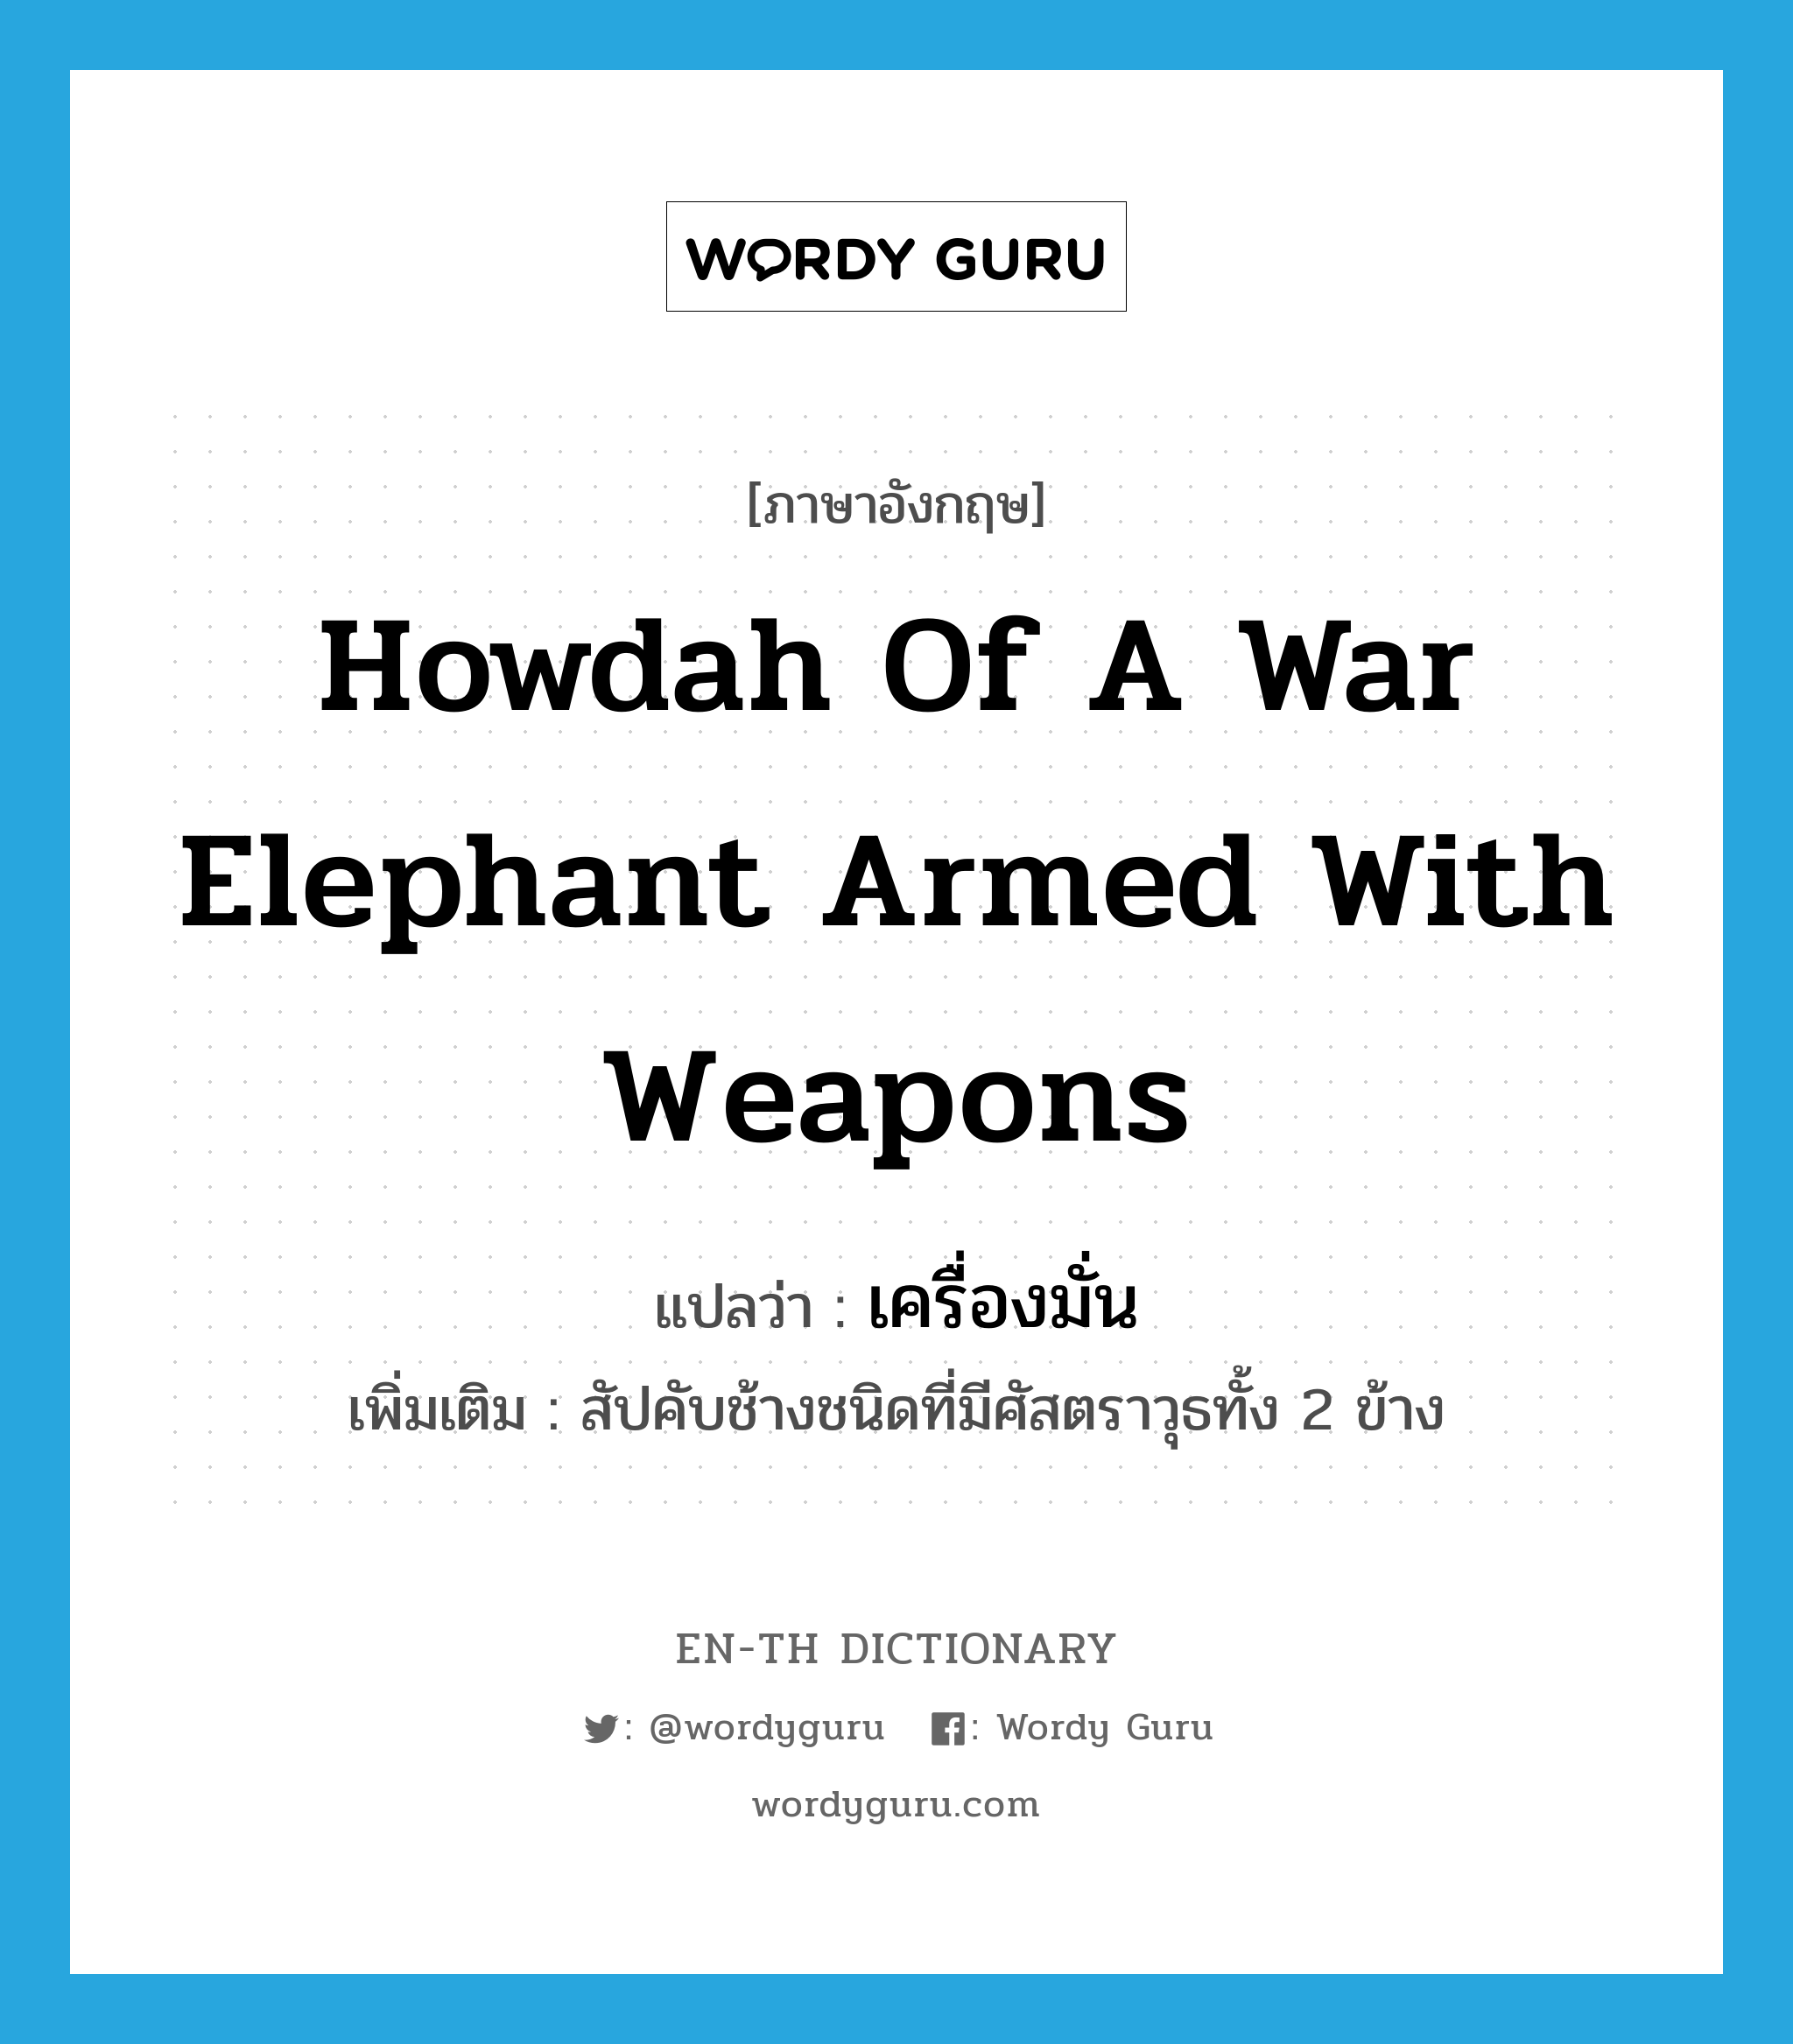 เครื่องมั่น ภาษาอังกฤษ?, คำศัพท์ภาษาอังกฤษ เครื่องมั่น แปลว่า howdah of a war elephant armed with weapons ประเภท N เพิ่มเติม สัปคับช้างชนิดที่มีศัสตราวุธทั้ง 2 ข้าง หมวด N